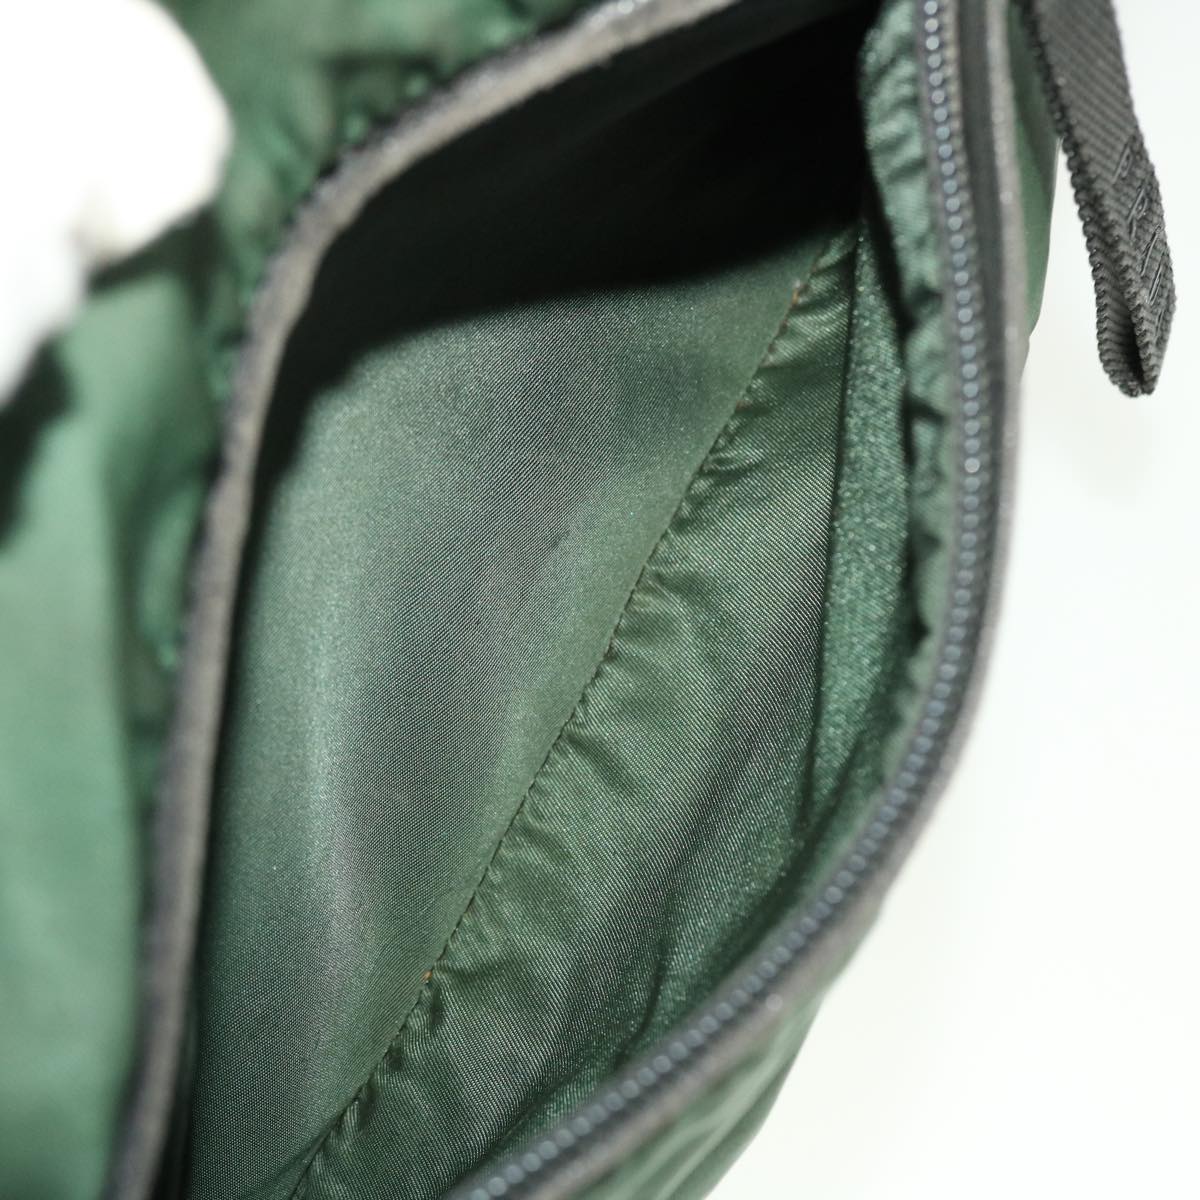 PRADA Shoulder Bag Nylon Khaki Auth ar9593